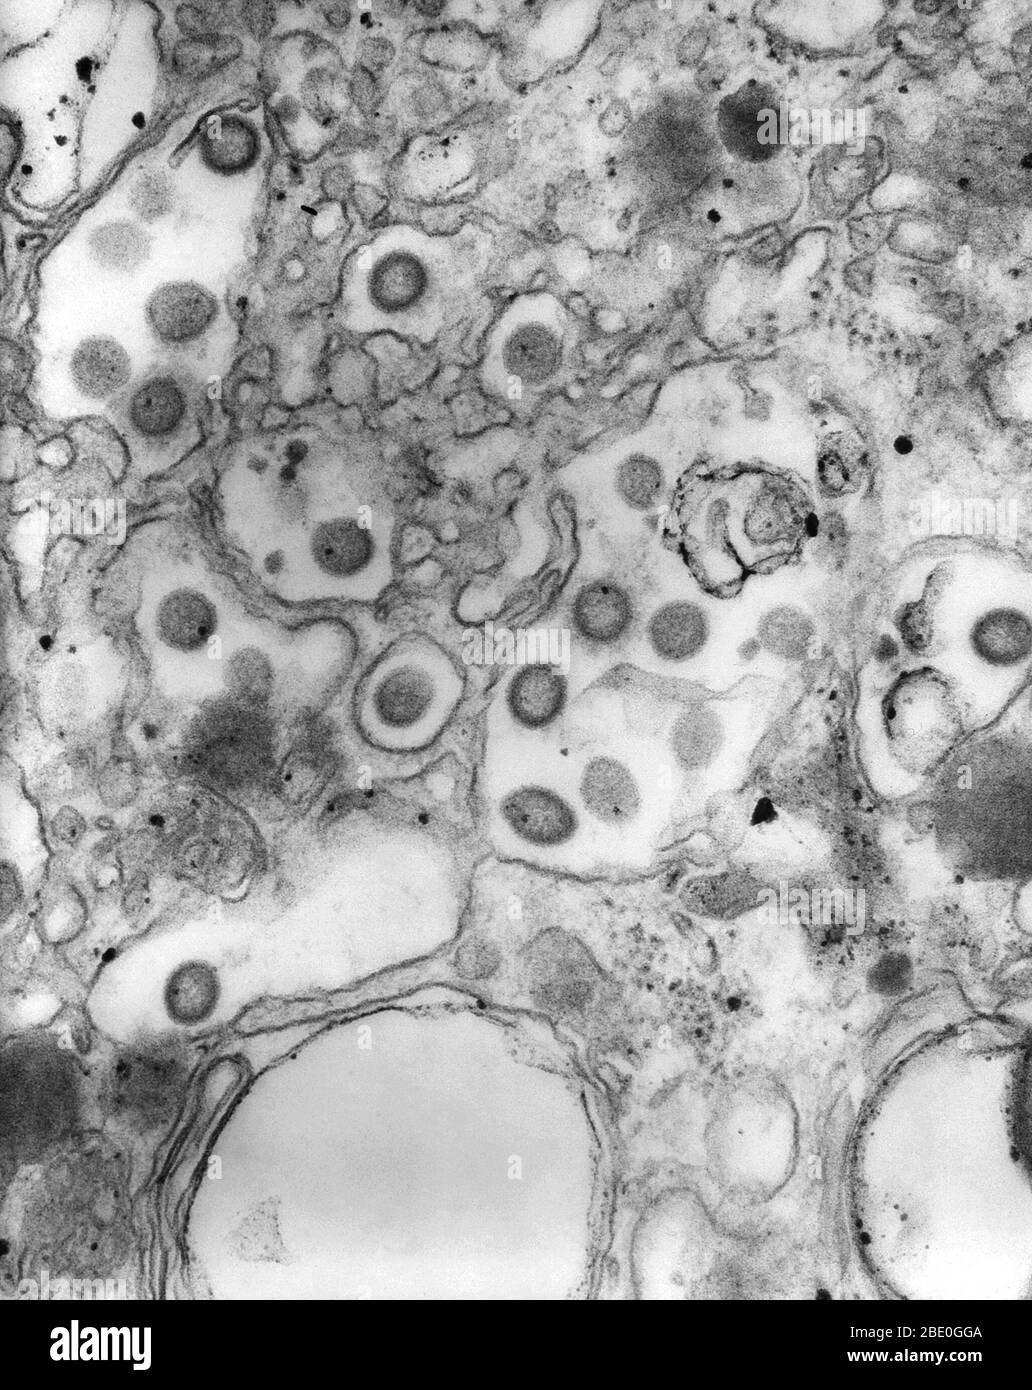 Micrografia elettronica a trasmissione colorata negativamente (TEM) di numerosi virioni del virus Ganjam in campioni di tessuto. Questo membro della famiglia Bunyaviridae è antigenicamente, strettamente correlato e una variante asiatica del virus della malattia delle pecore di Nairobi (NSDV). Sebbene non contagioso, il virus Ganjam è un arbovirus, diffuso attraverso il morso di alcuni segni di spunta, tra cui Hemaphysalis intermedia e Rhipephalus emaphysicaloides. La più grande famiglia di virus, Bunyaviridae sono virus di RNA a singolo filamento a senso negativo ((-) ssRNA), che sono diffusi attraverso il contatto con artropodi e roditori infetti. Foto Stock